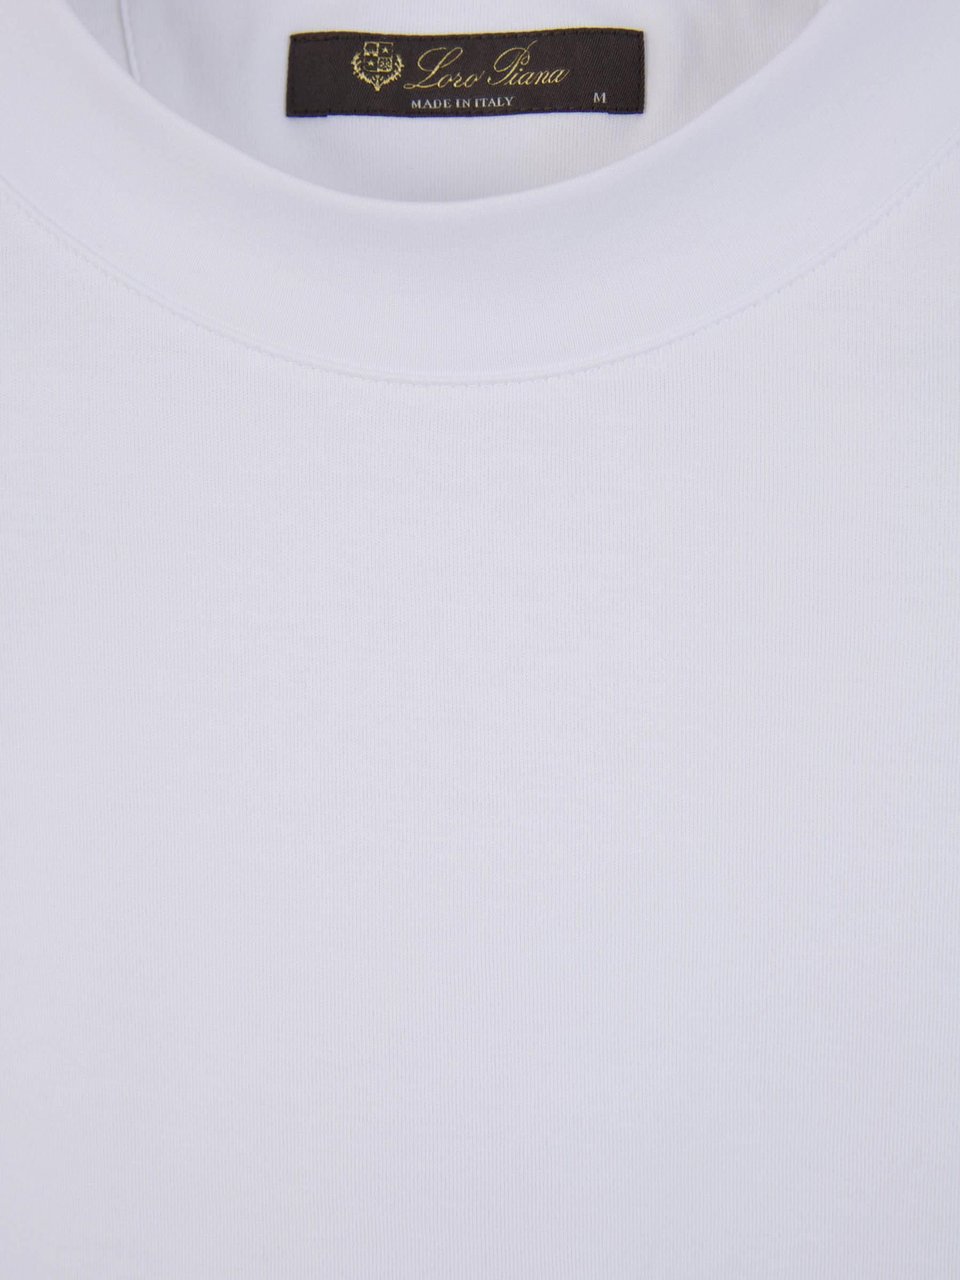 Loro Piana Plain Cotton T-shirt Wit